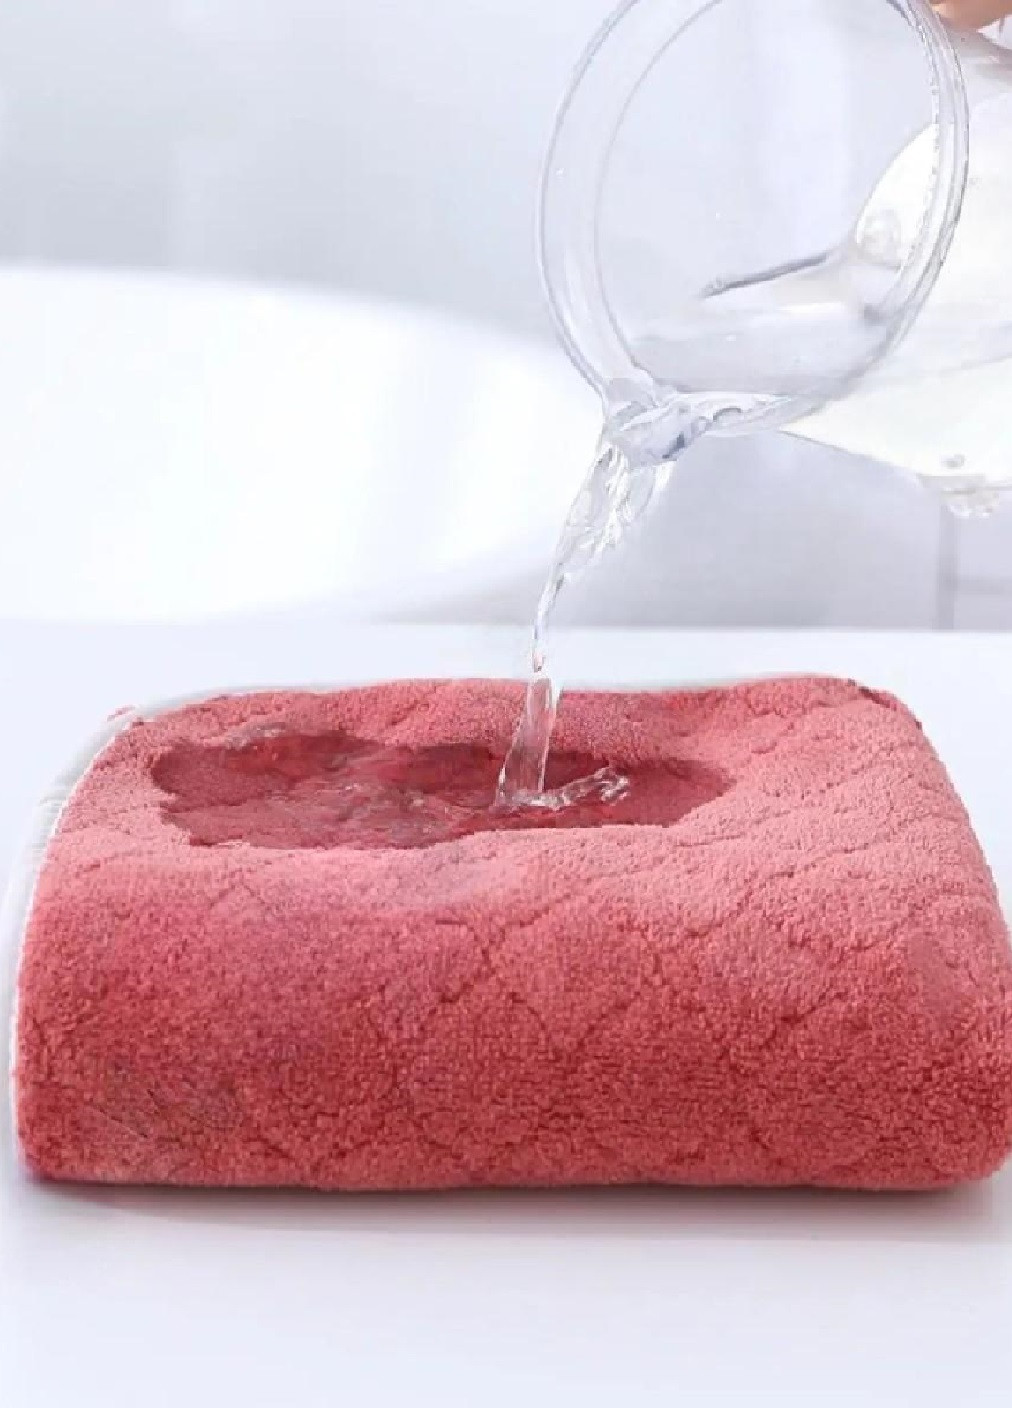 Unbranded рушник мікрофліс мікрофібра для ванни лазні сауни пляжу швидковисихаючий з візерунком 160х90 см (476107-prob) класик червоний однотонний червоний виробництво -